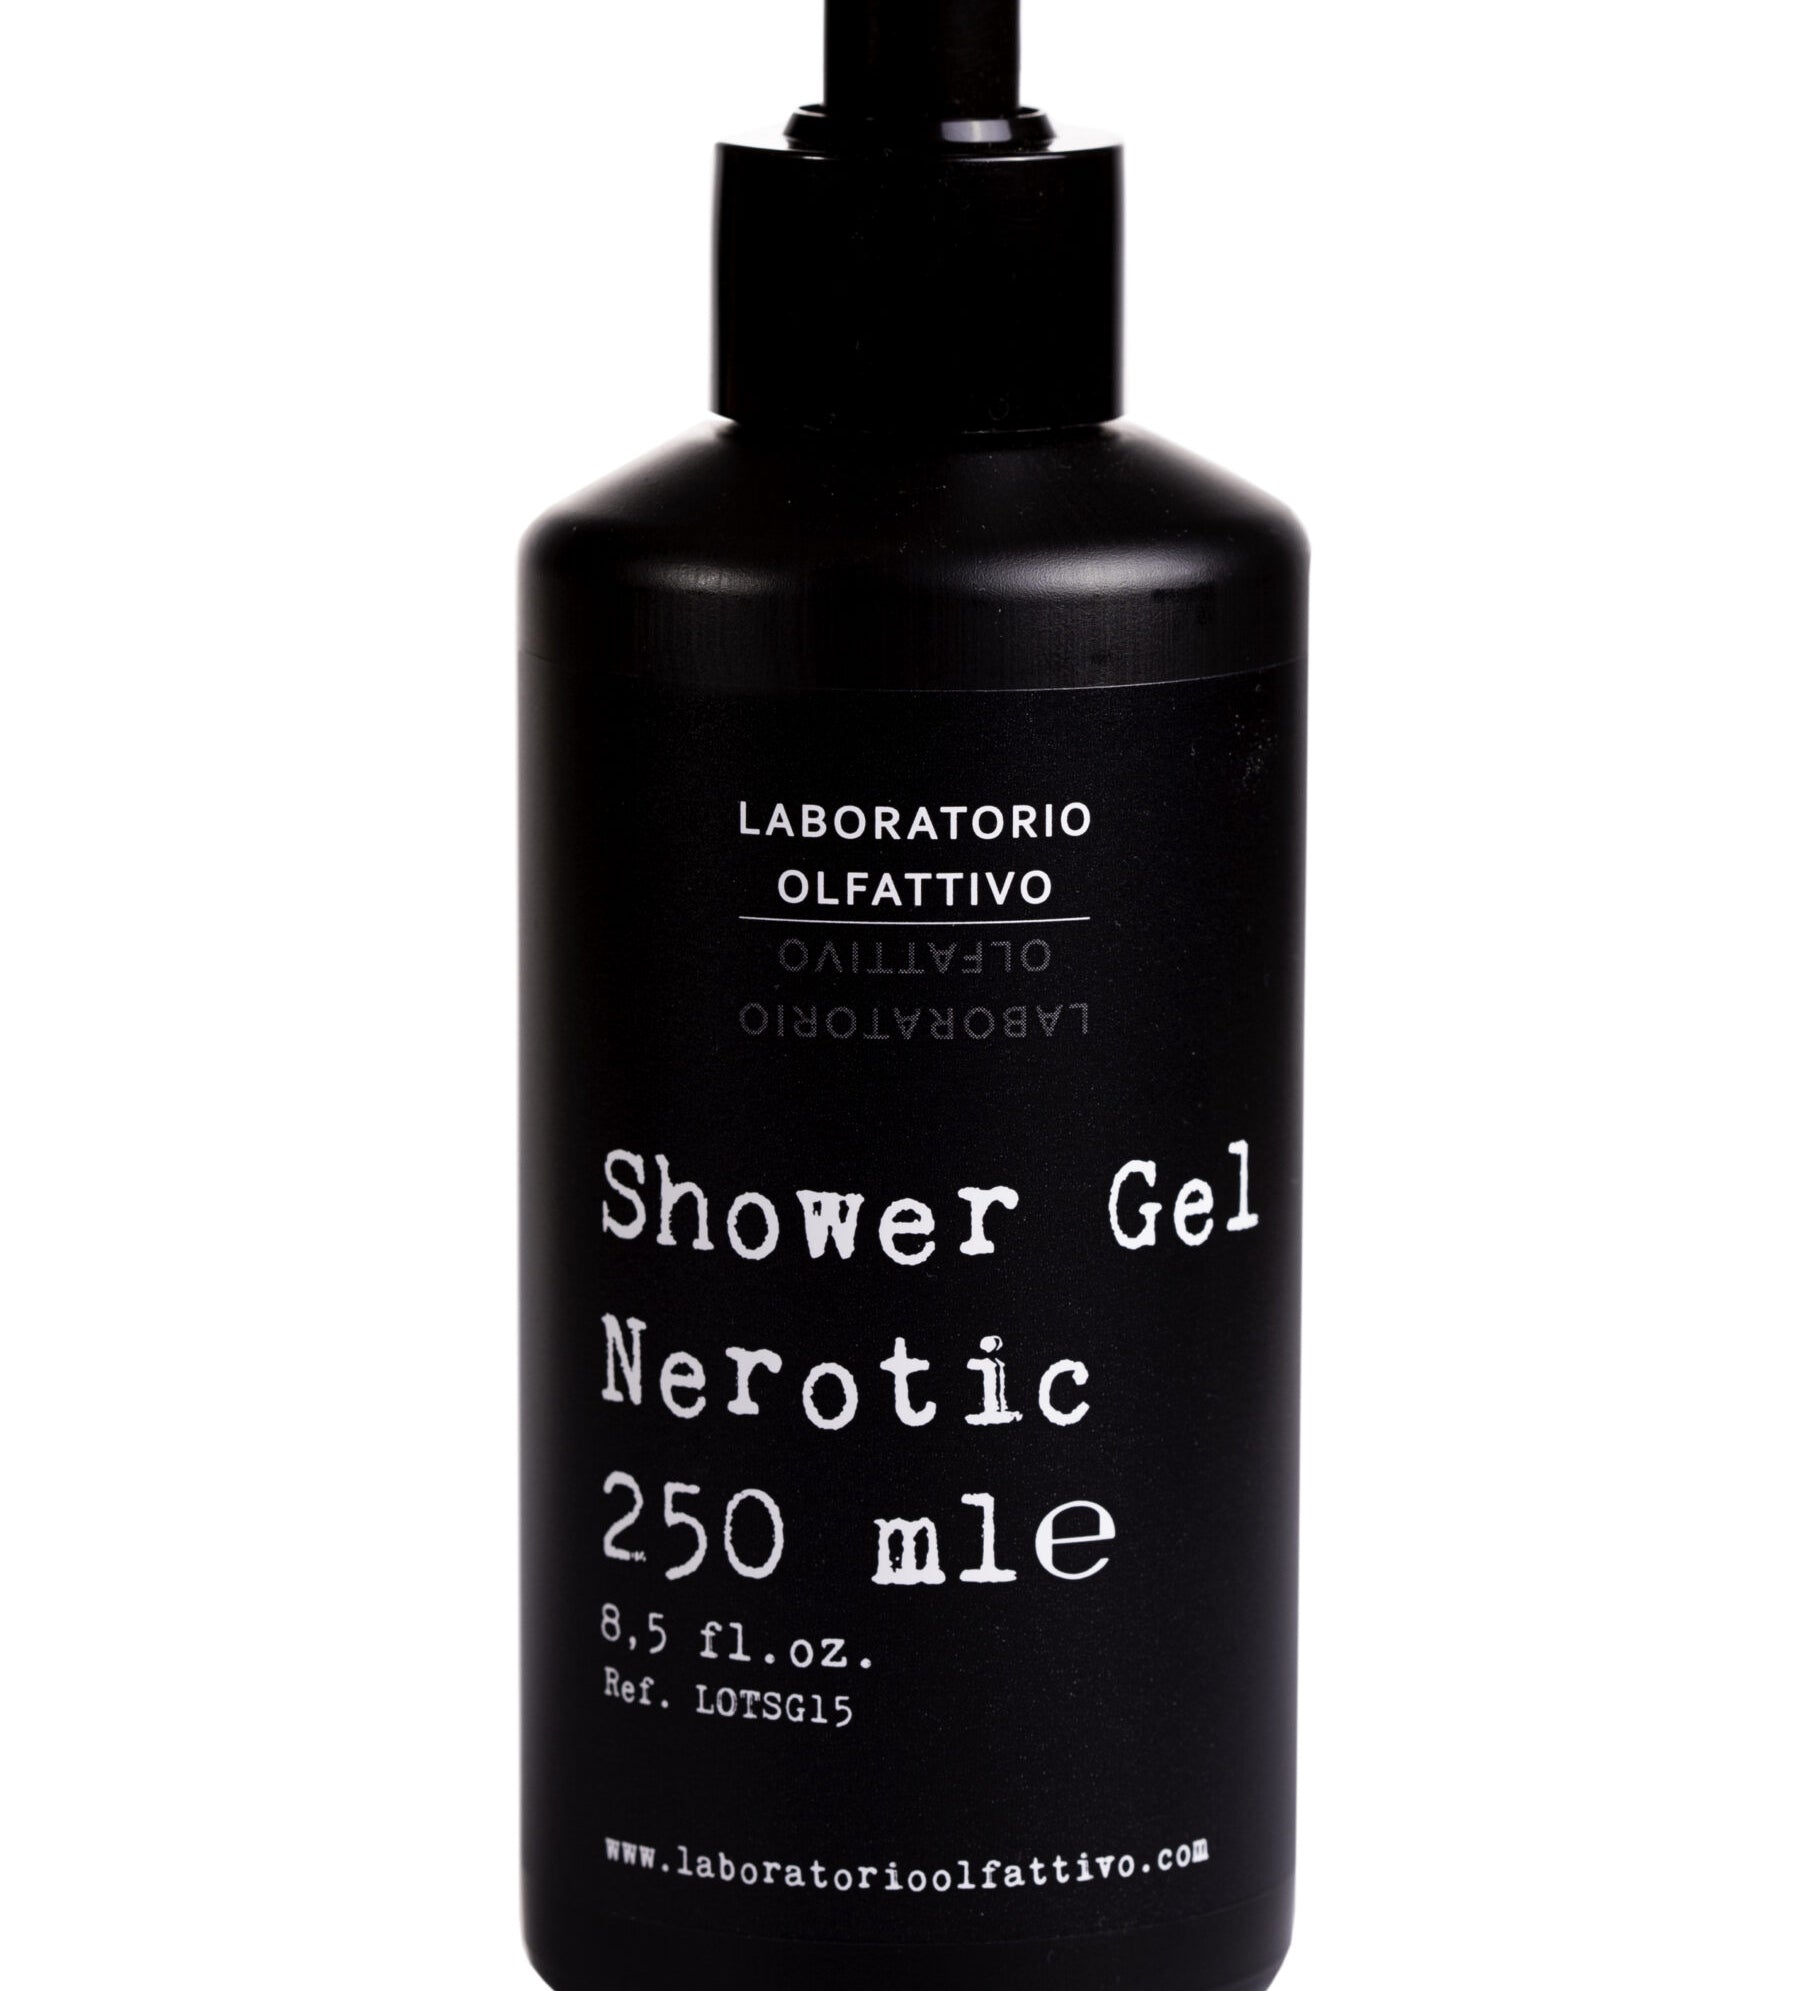 Shower-gel-Nerotic-scaled.jpg